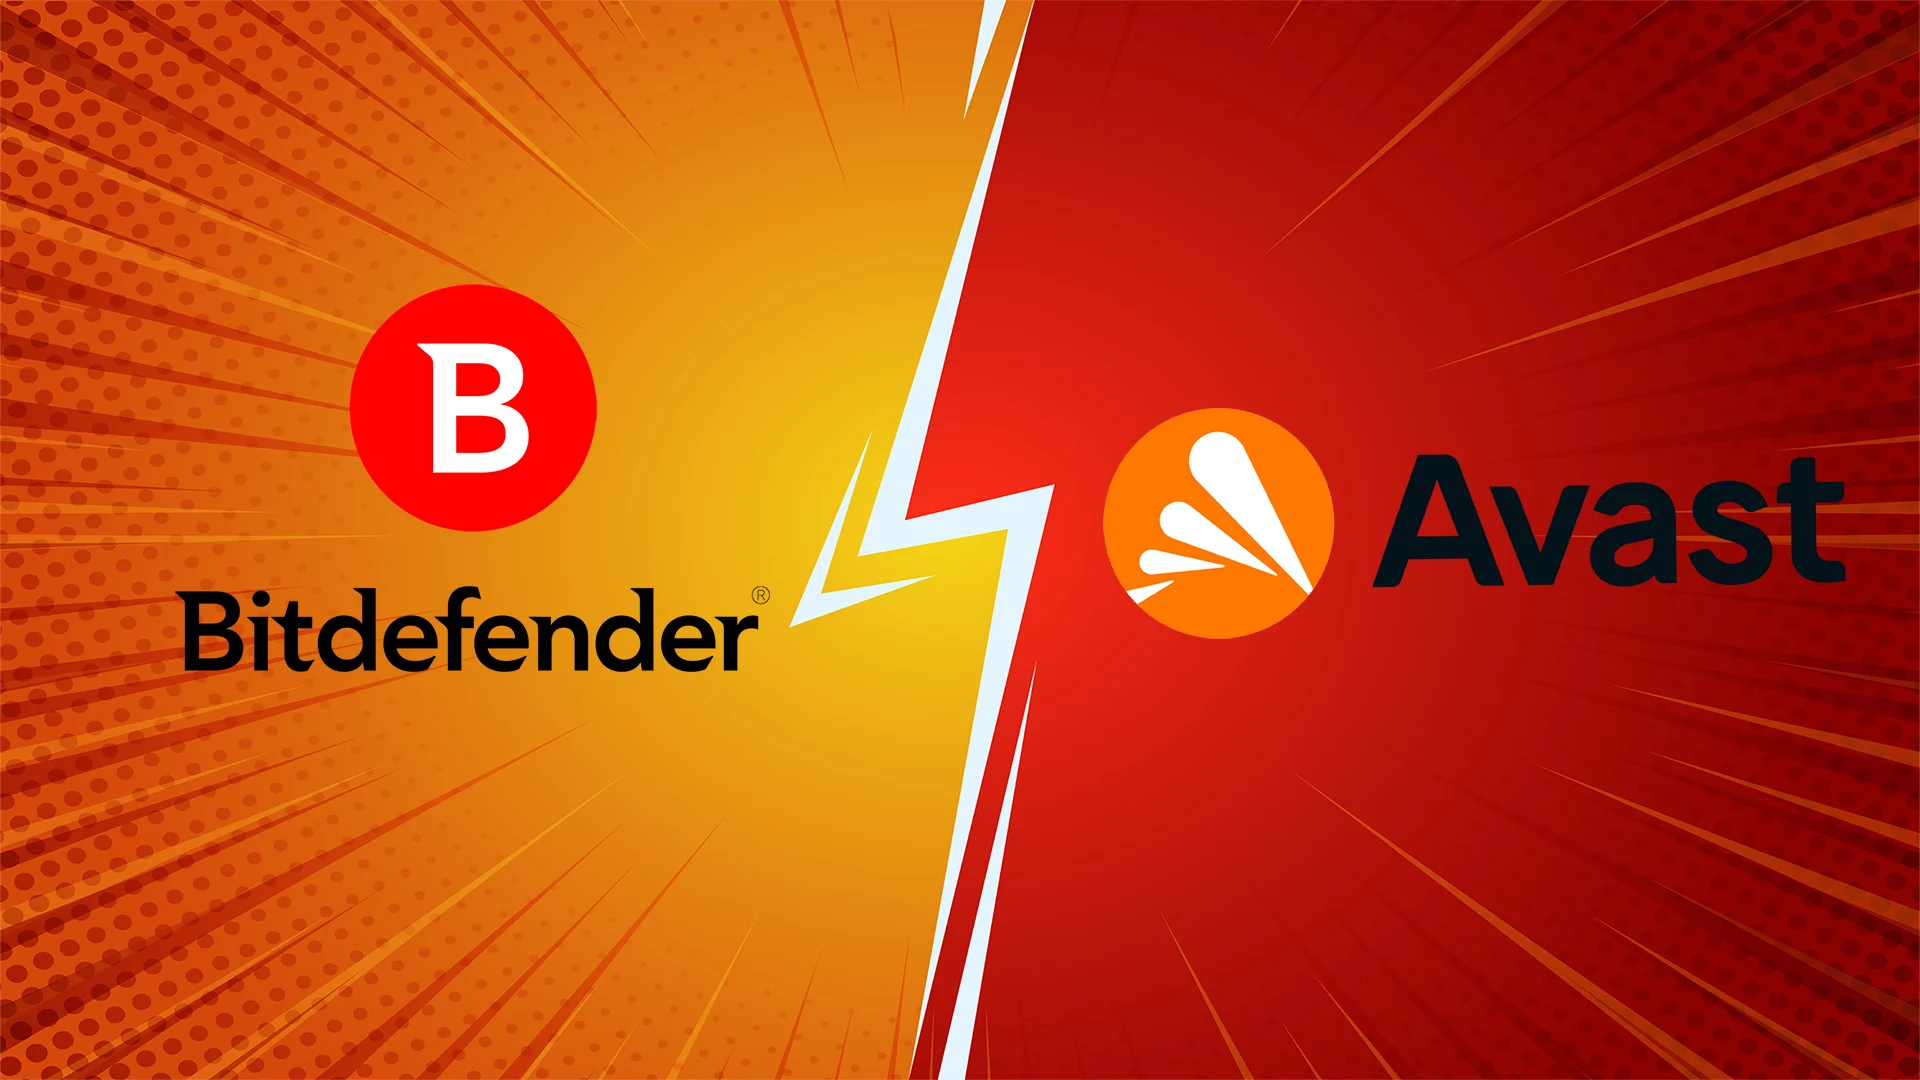 الشخص الذي يقدم أداءً أعلى وخصوصية أفضل وكفاءة نظام أفضل ، فز بمقارنة Bitdefender مقابل Avast